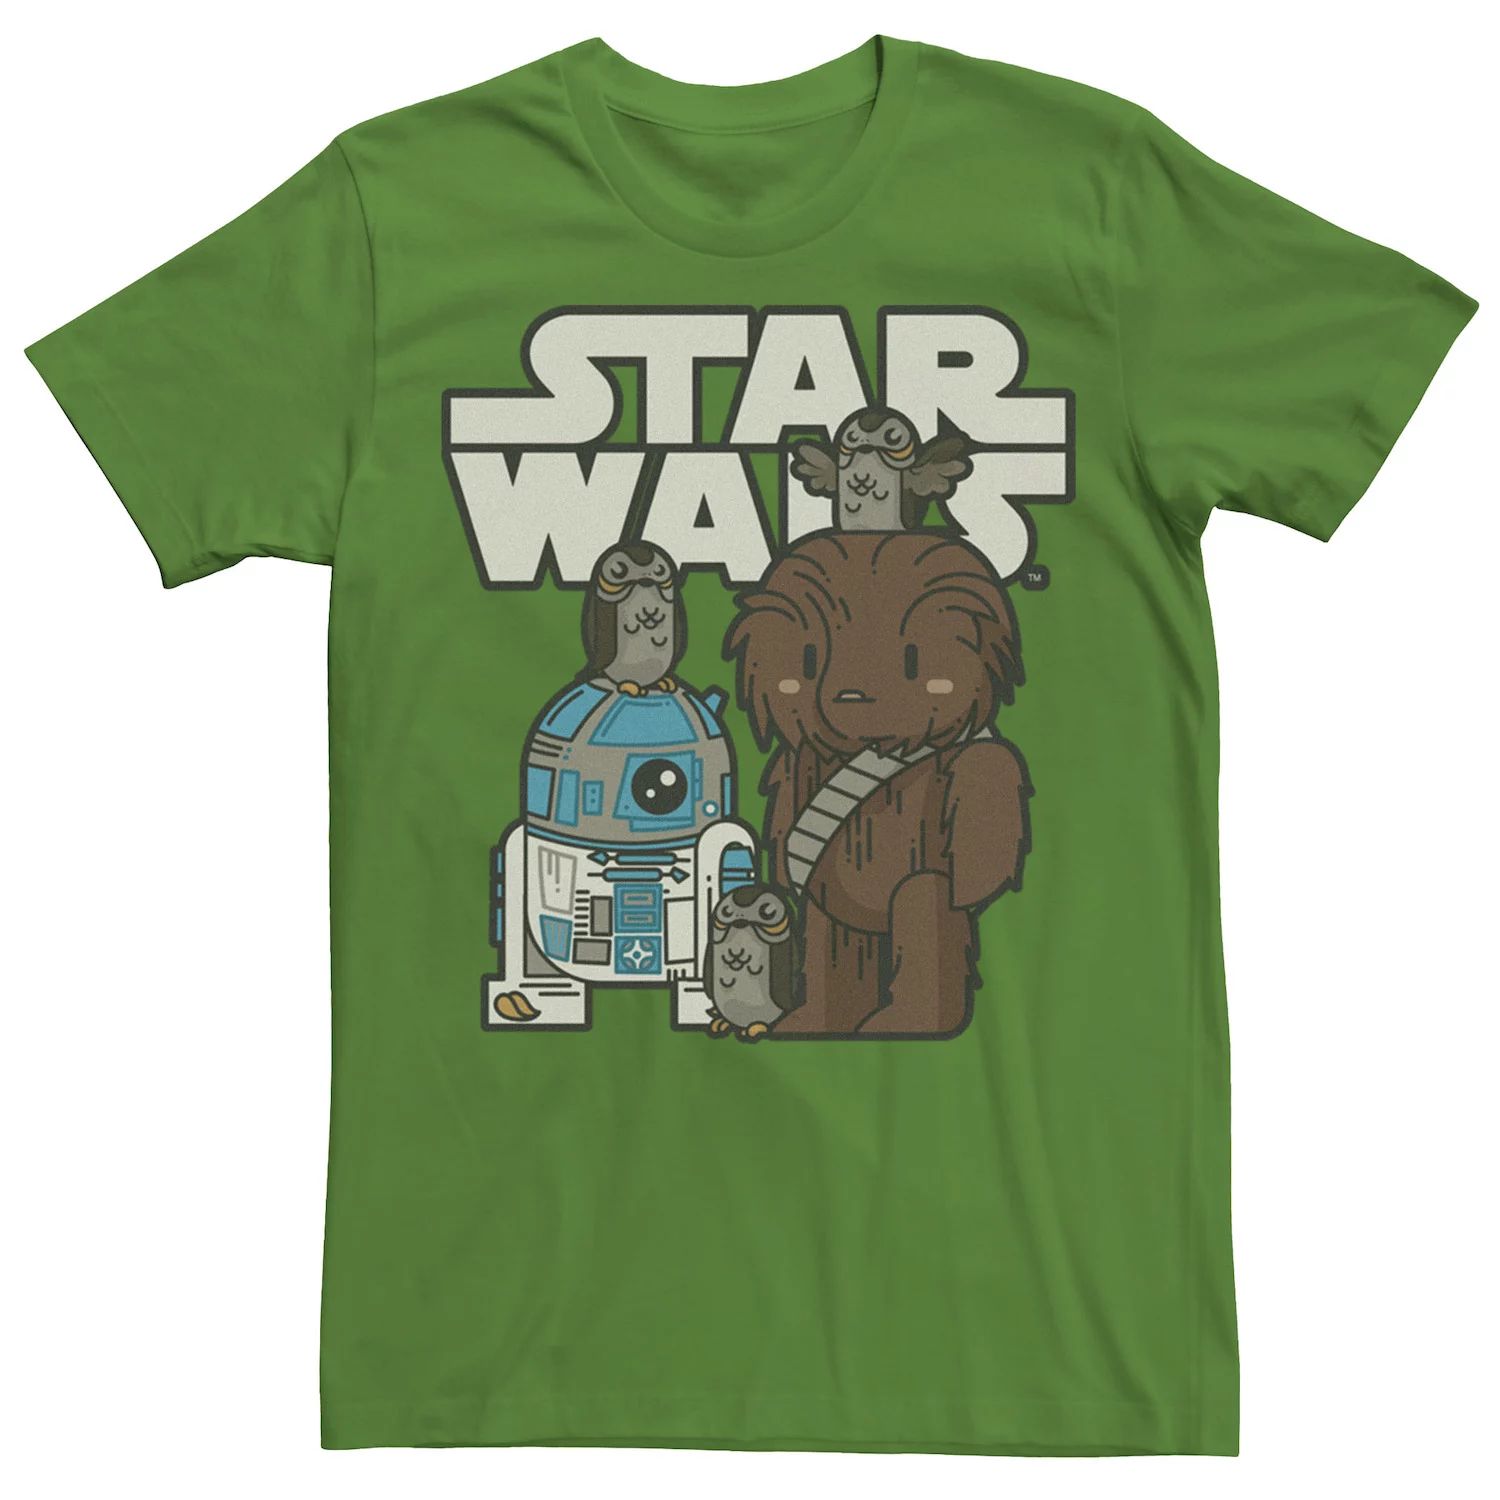 Мужская футболка с героями мультфильмов «Последние джедаи Звездных войн» R2-D2, Porgs и Chewie Cutie Marvel kelly